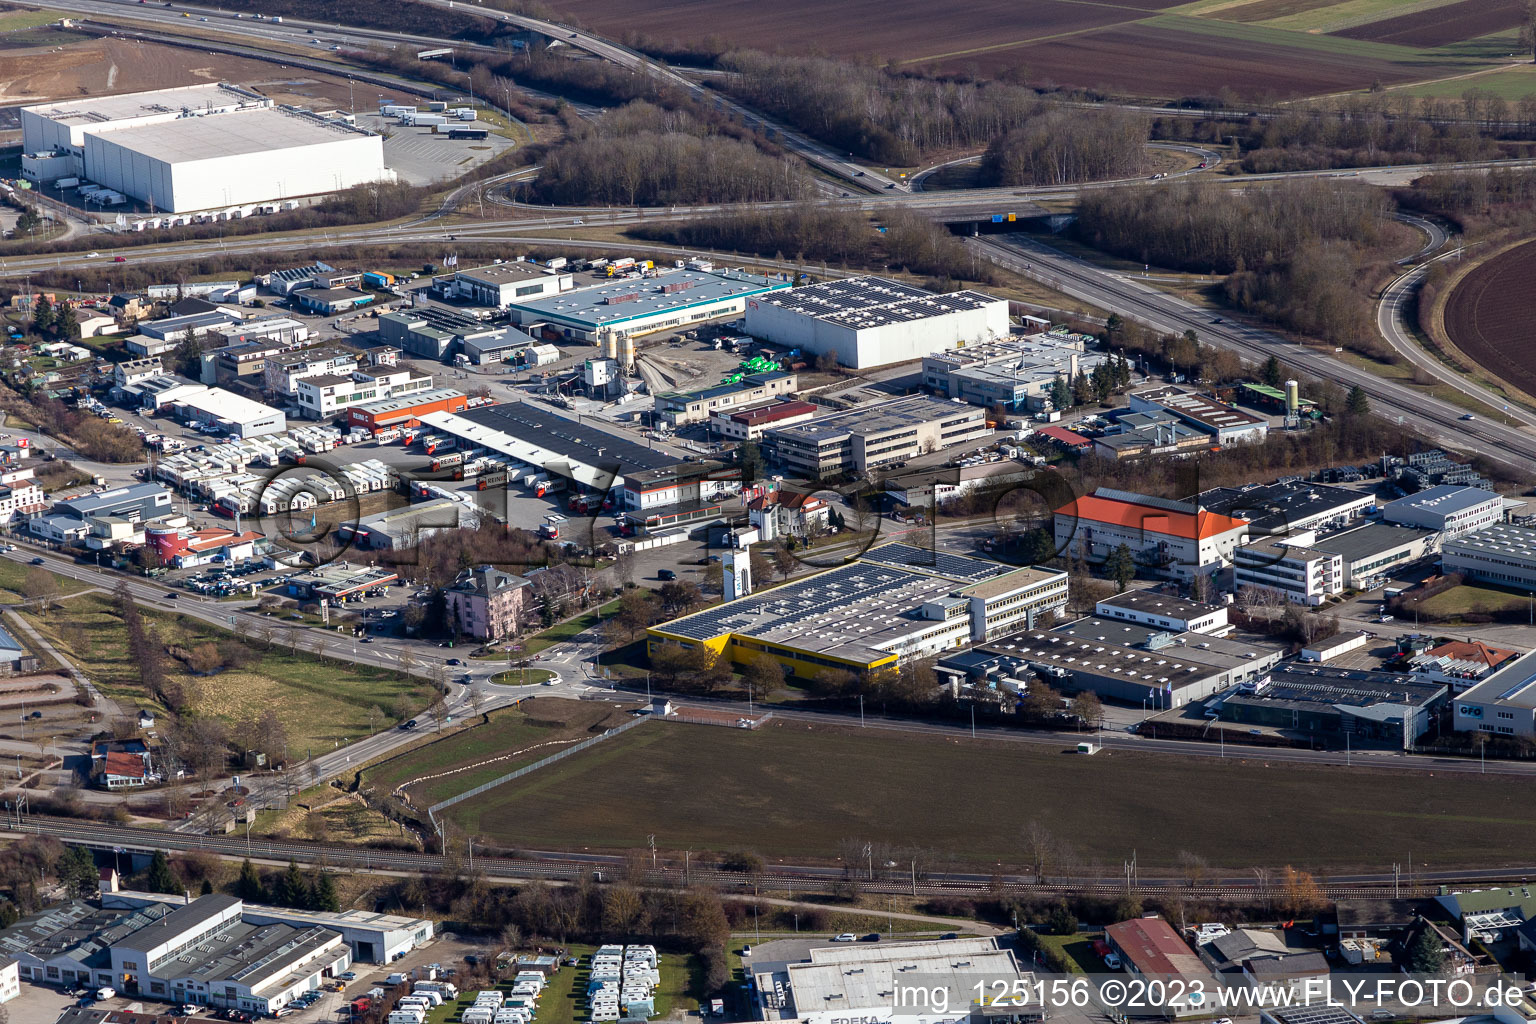 Vue aérienne de Zone industrielle à Gärtringen dans le département Bade-Wurtemberg, Allemagne